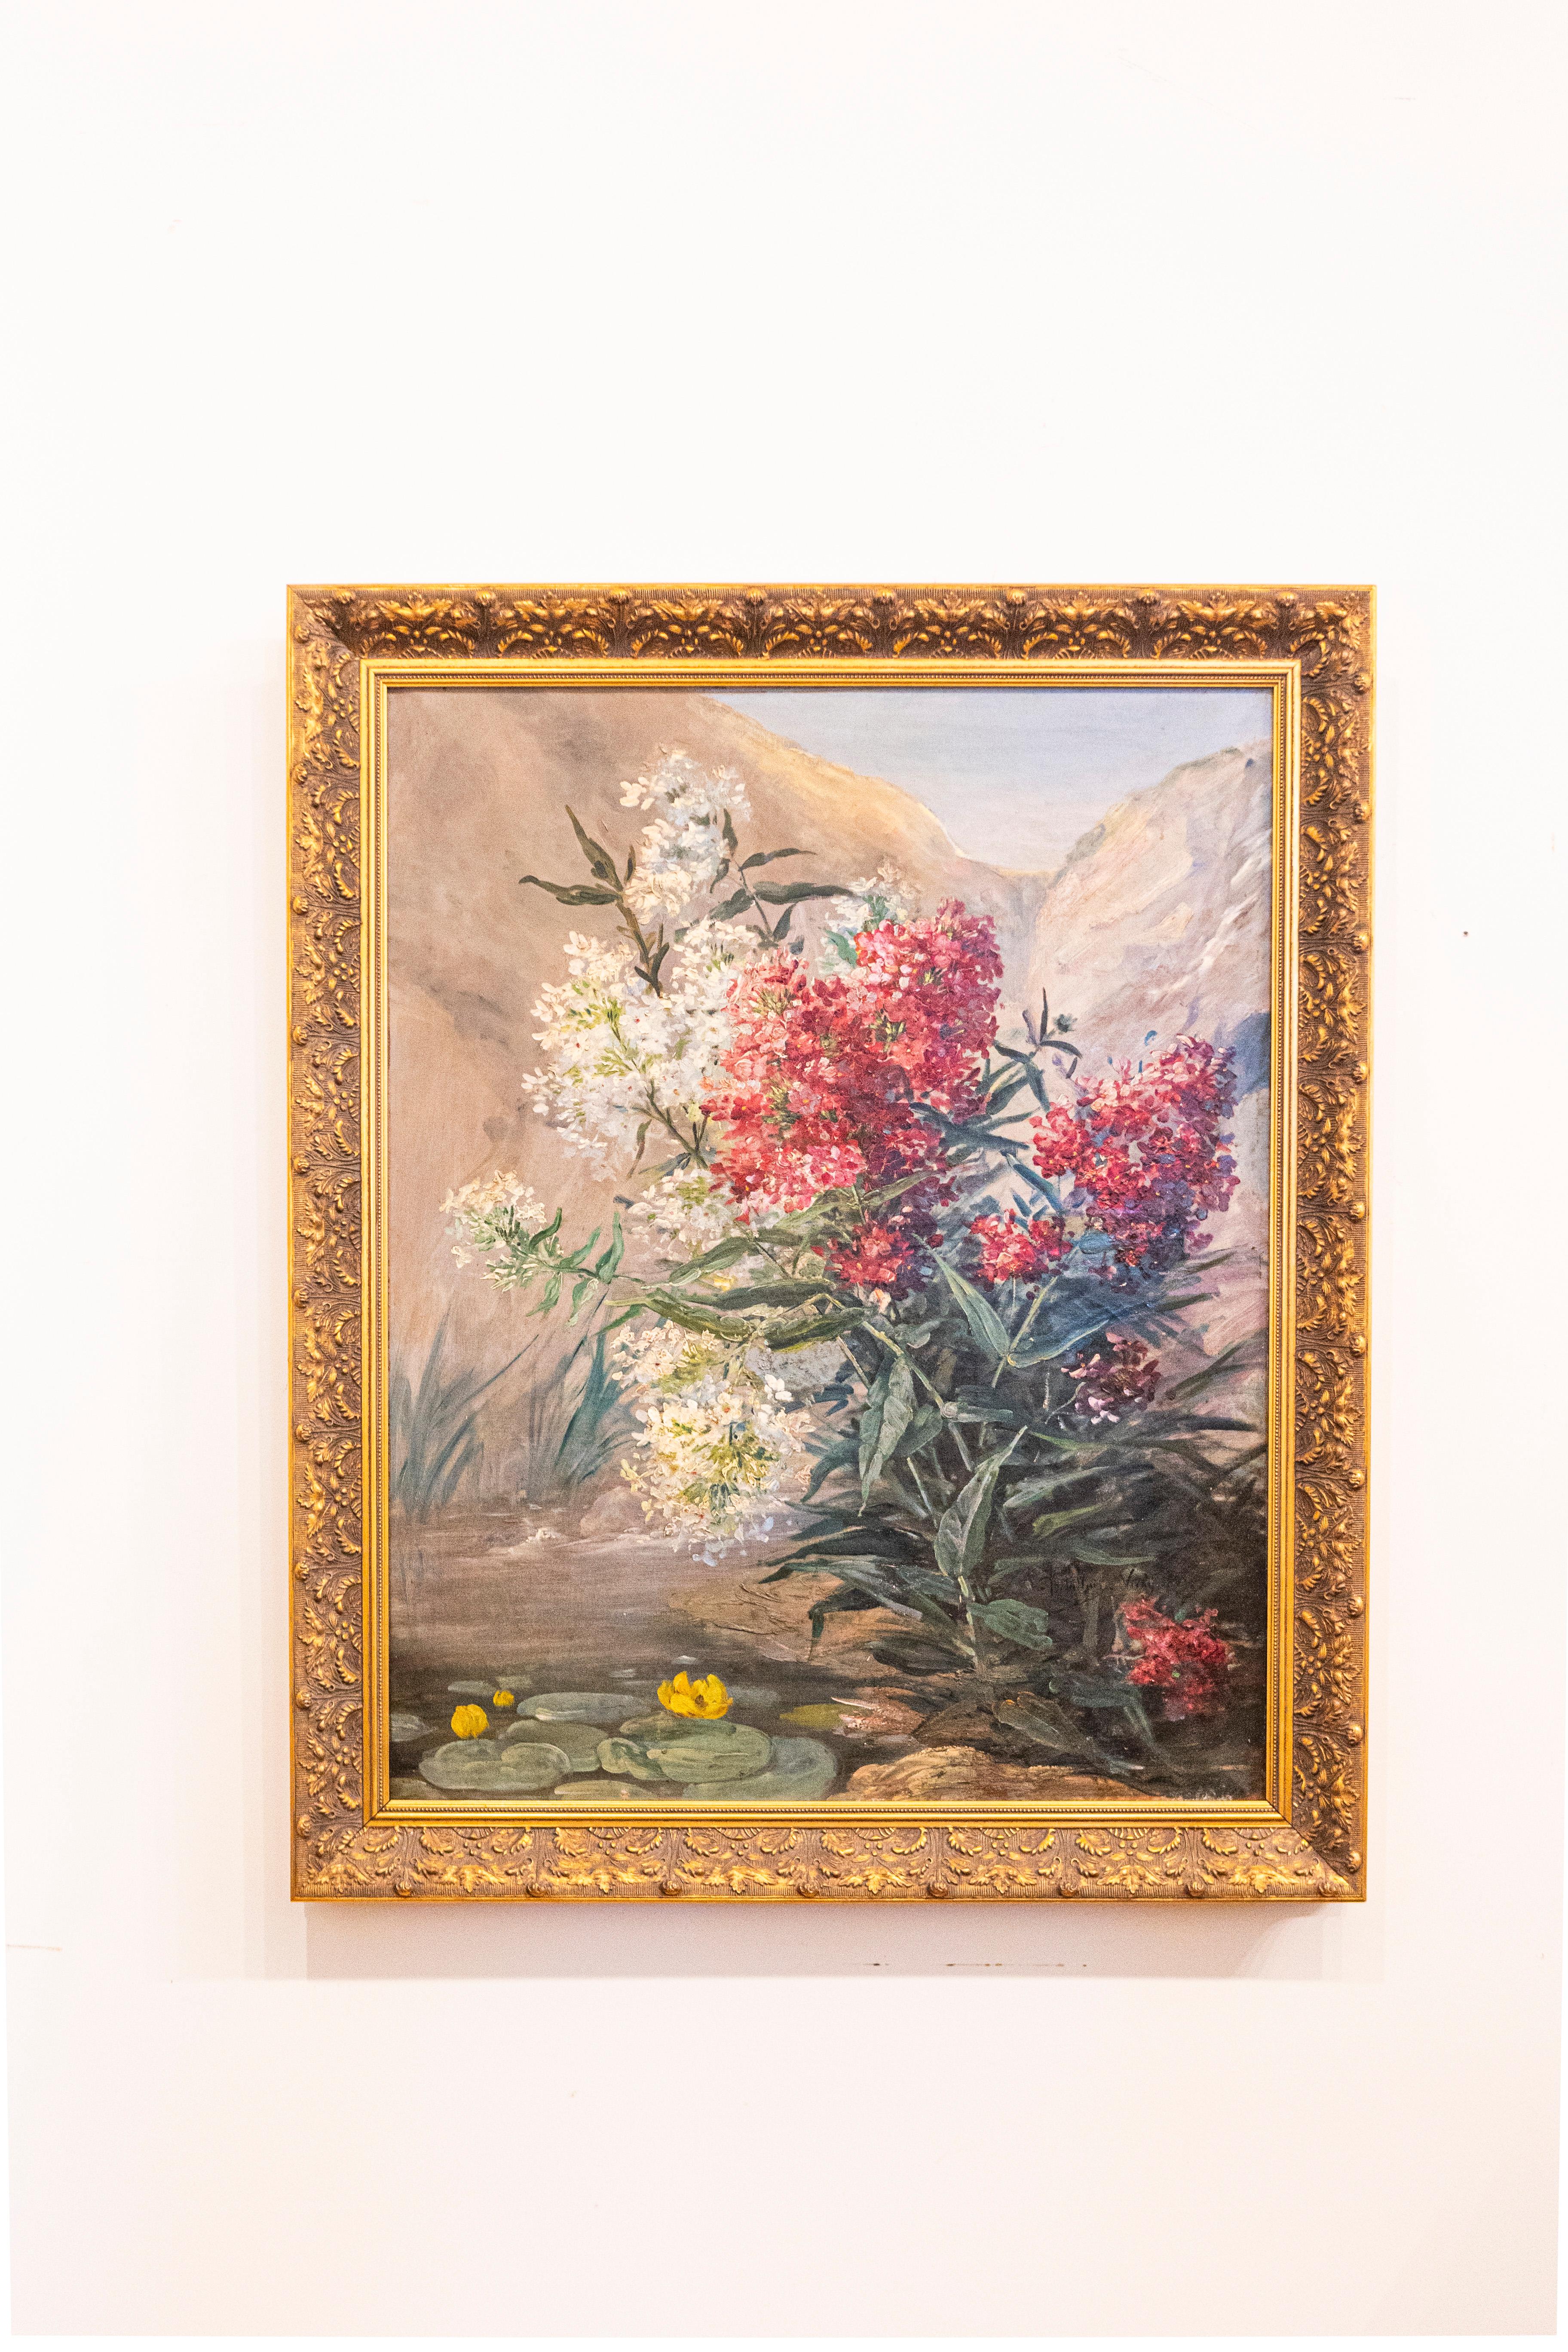 Une nature morte française encadrée à l'huile sur toile de la fin du 19e siècle représentant un bouquet de fleurs dans un paysage. Née en France dans les dernières années du XIXe siècle, cette peinture à l'huile sur toile signée présente un bouquet